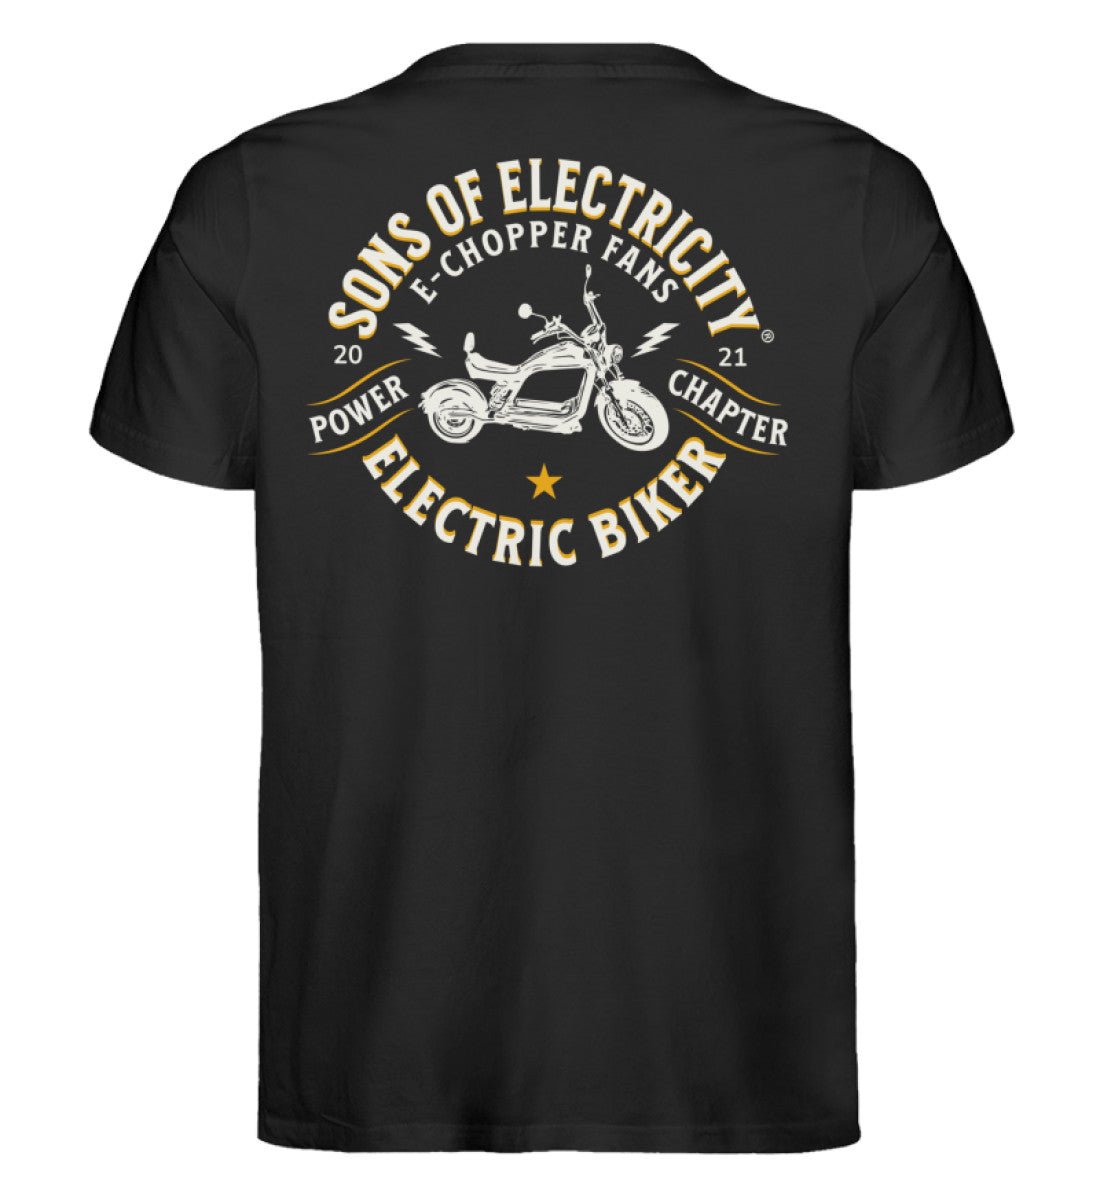 Bio Premium E-Chopper (2) T-Shirt: SONS OF ELECTRICITY Fans